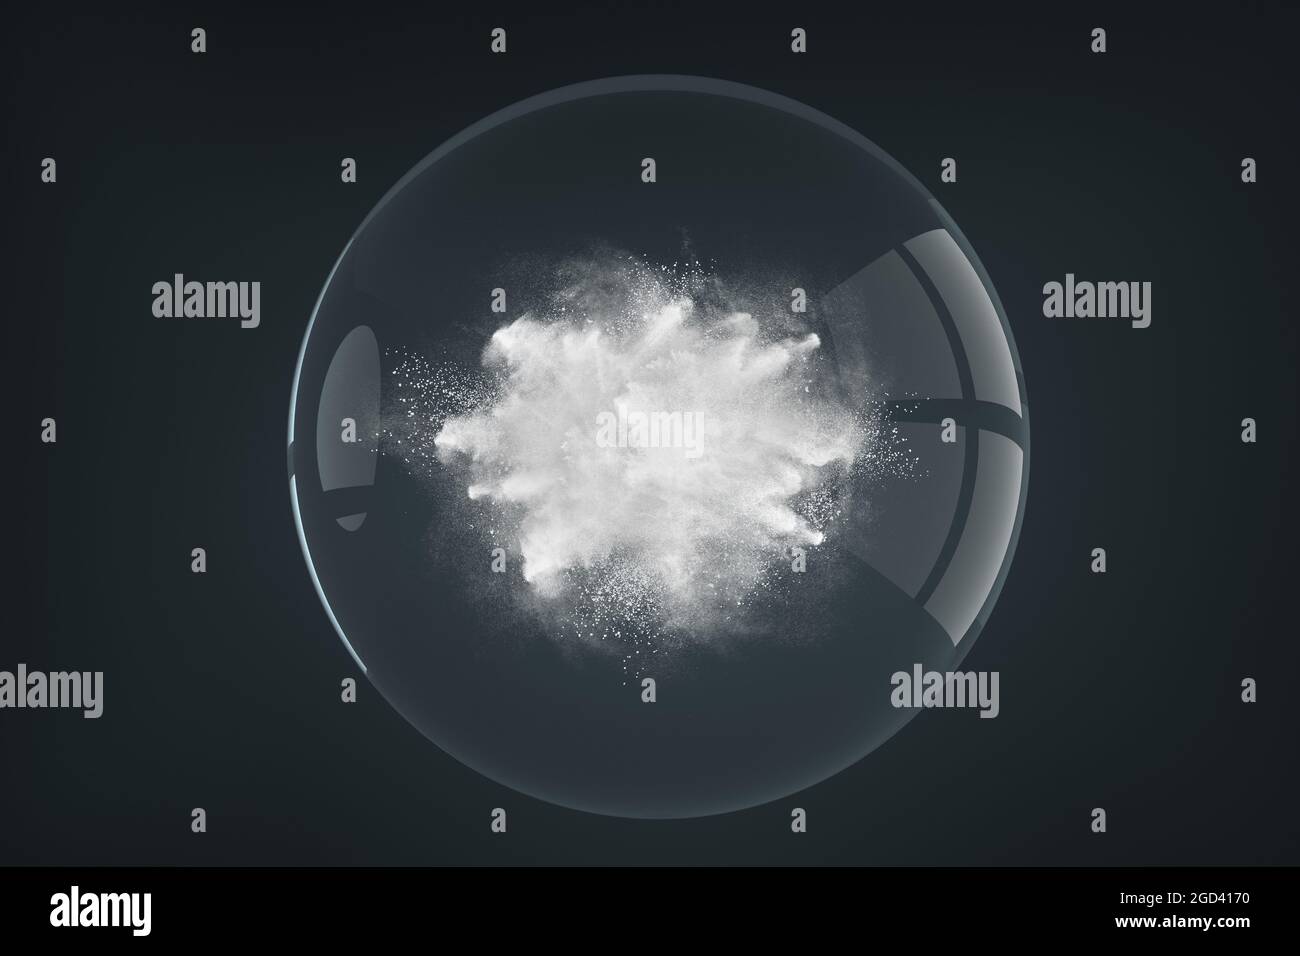 Diseño abstracto de partículas de polvo o humo que nublan la explosión sobre fondo oscuro dentro de la esfera de cristal transparente Foto de stock